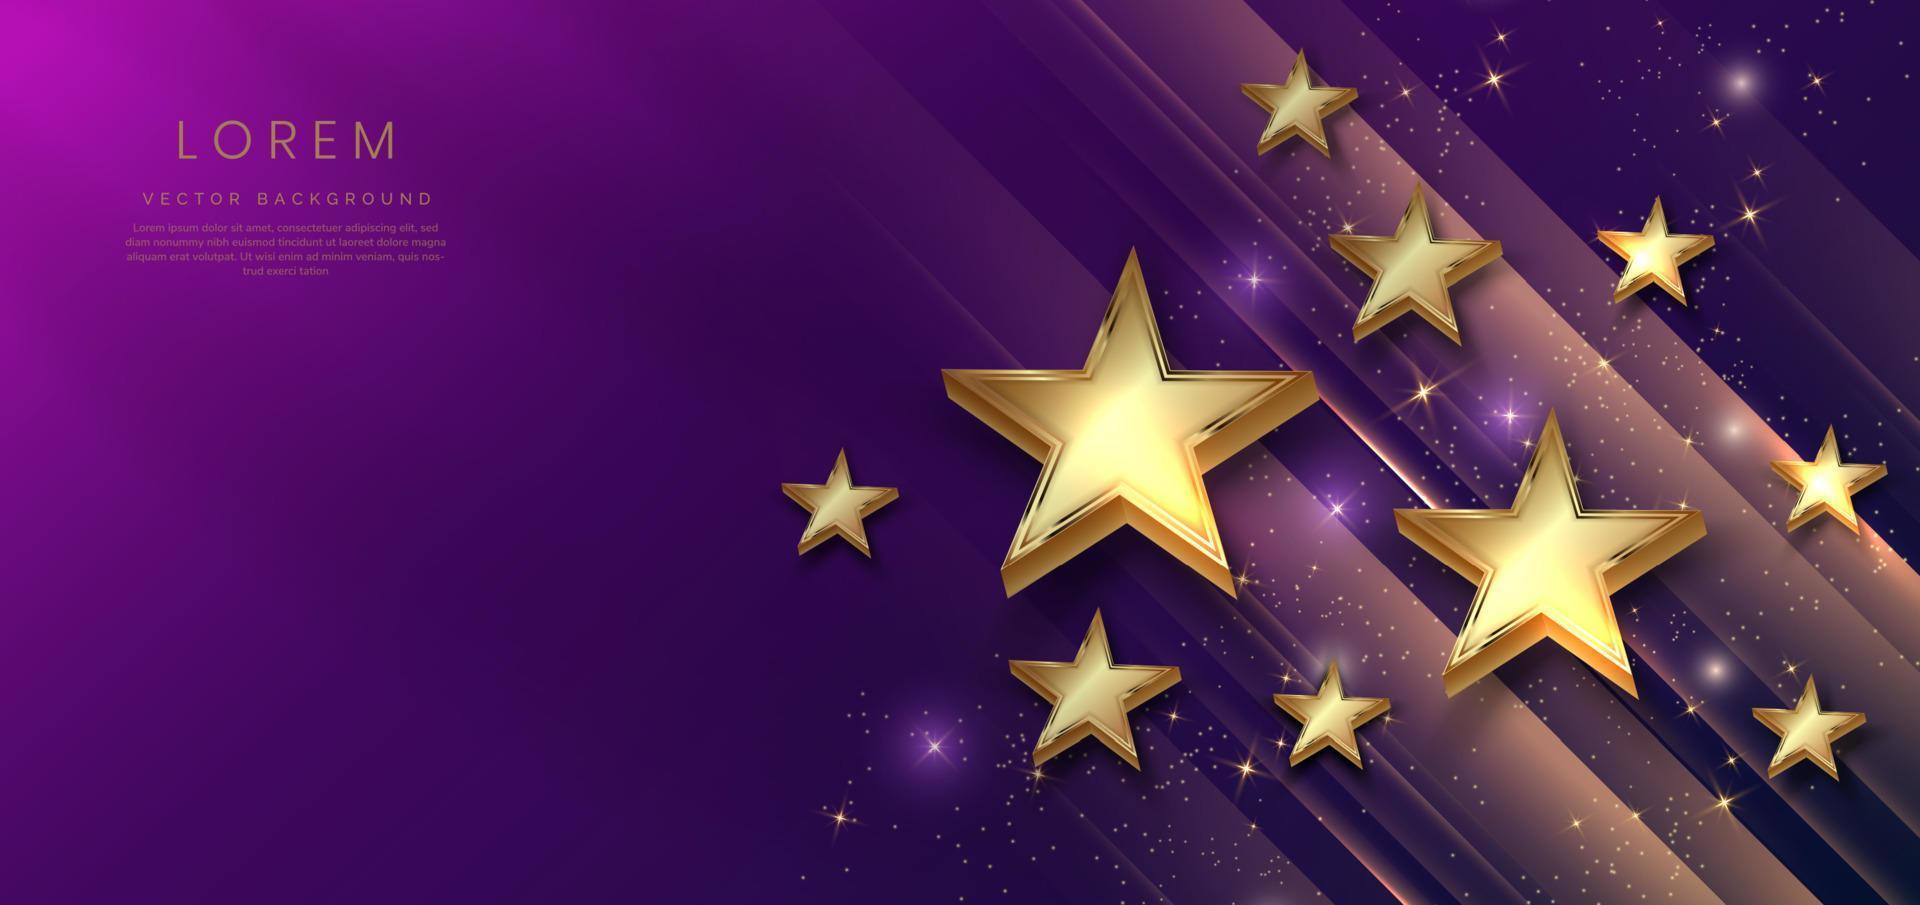 estrellas doradas de lujo abstractas sobre fondo azul oscuro y violeta con efecto de iluminación y spakle. diseño de premio premium de plantilla. vector